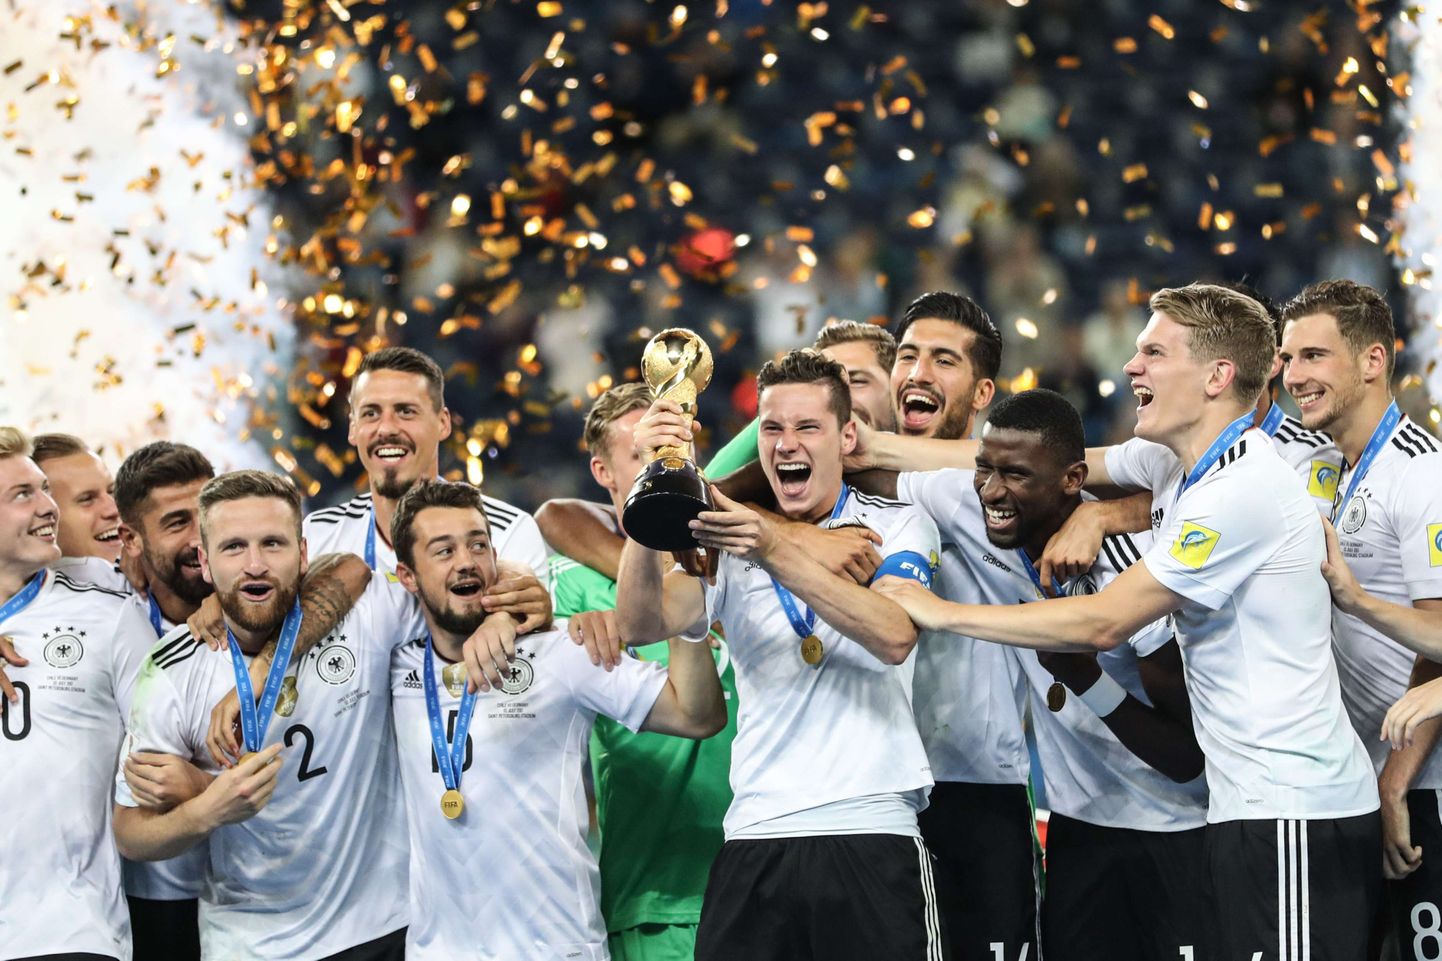 Saksamaa jalgpallikoondis tähistamas maailmajagude karikaturniiri võitu.